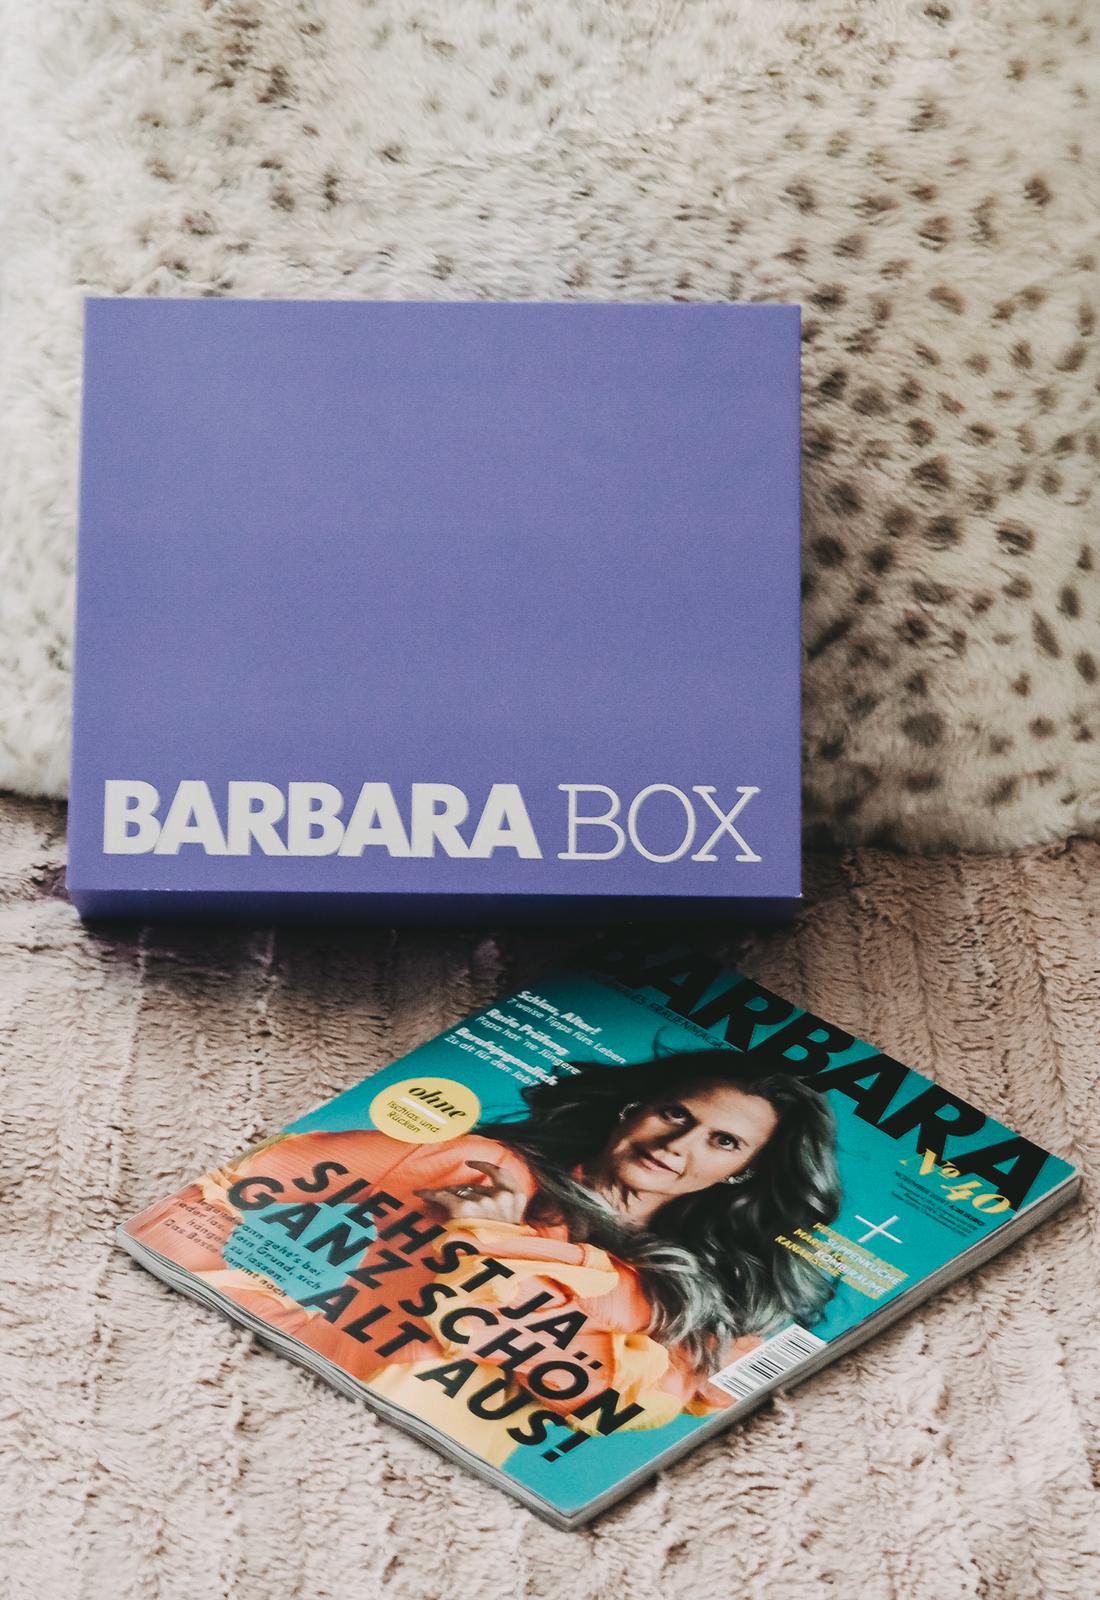 Die brandneue Barbara Box Pyjama Party verfügt über viele tolle Gimmicks, mit denen ihr ganz spontan im Bett eine Party starten könnt. Unboxing auf dem Blog